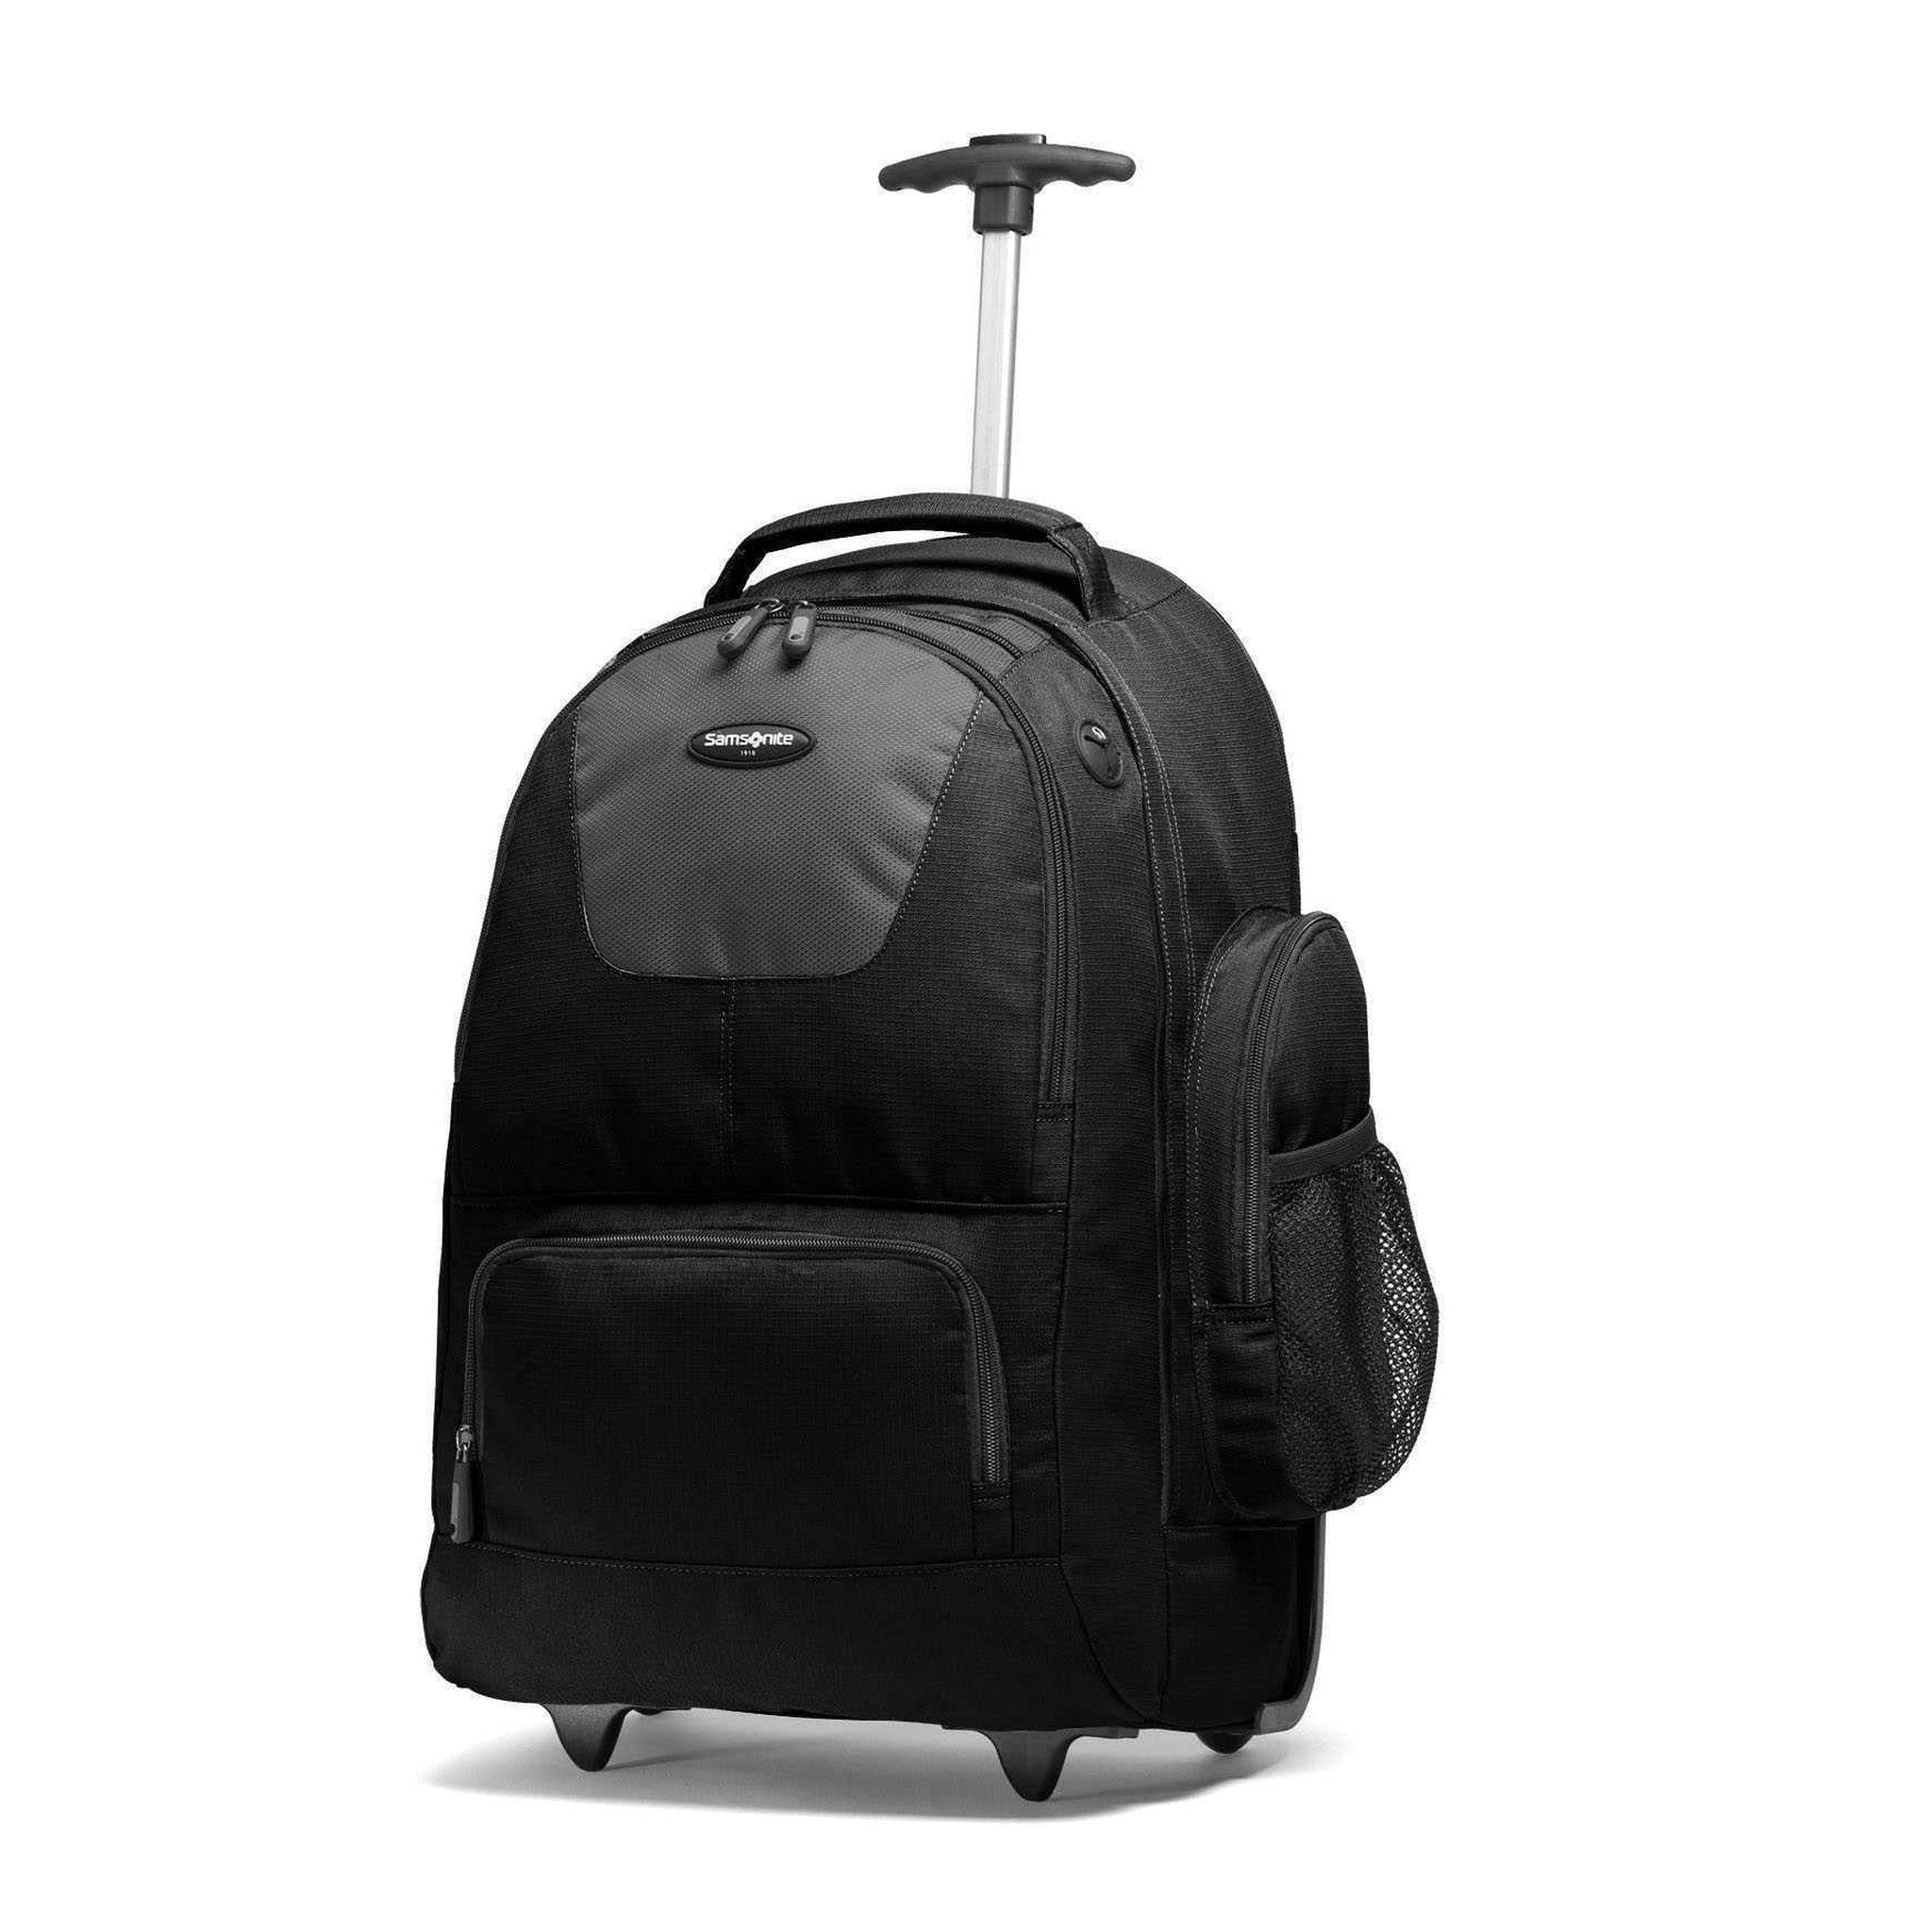 Samsonite 20" Wheeled – Luggage Pros